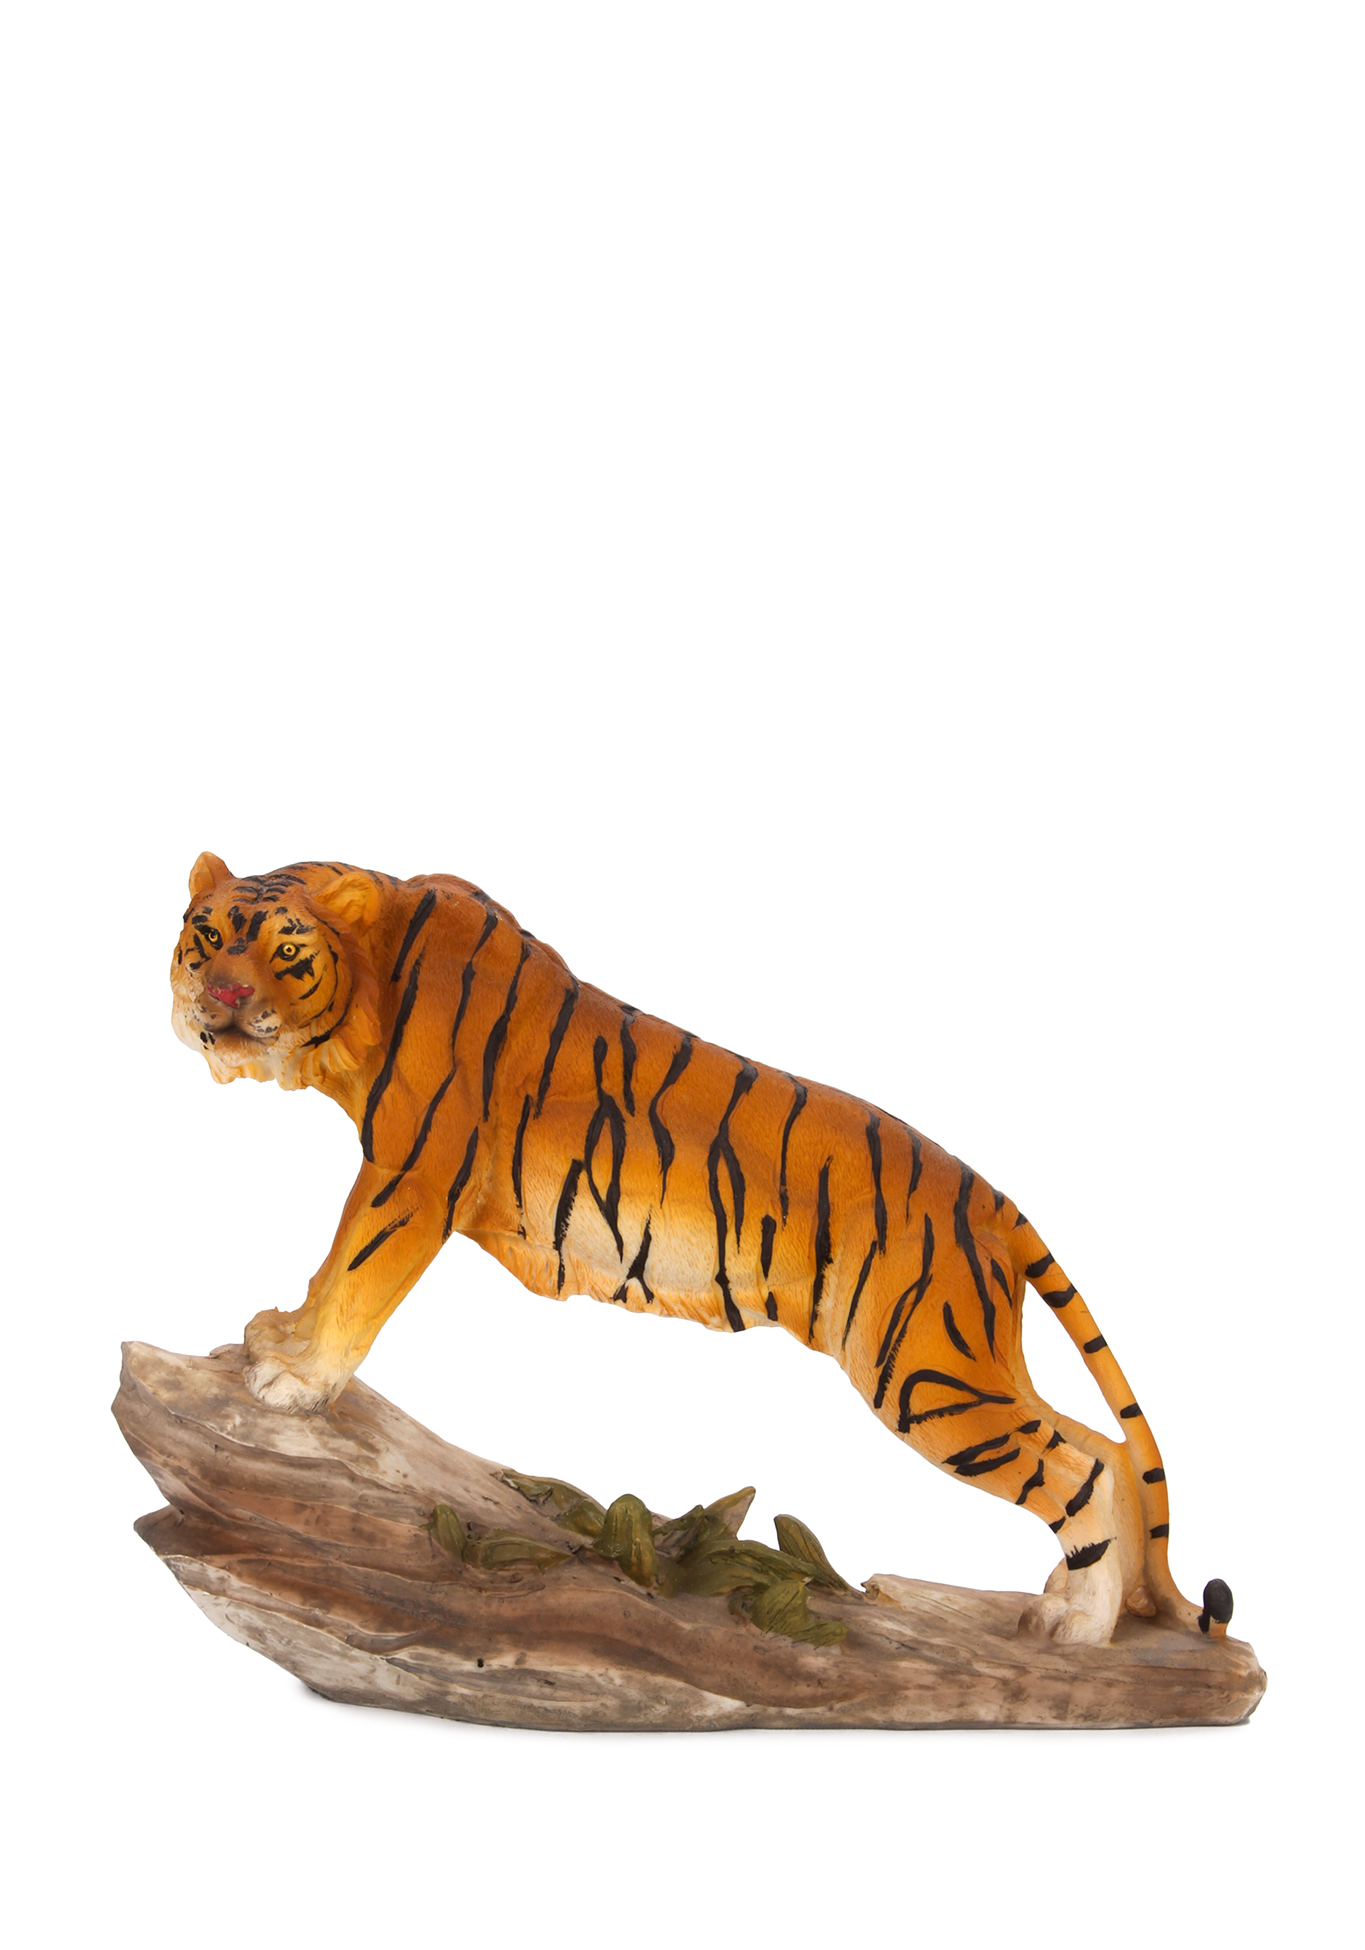 Оберег интерьерный "Тигр" Lefard, цвет стойка бенгальского тигра, размер 20,5*7*15 см - фото 1